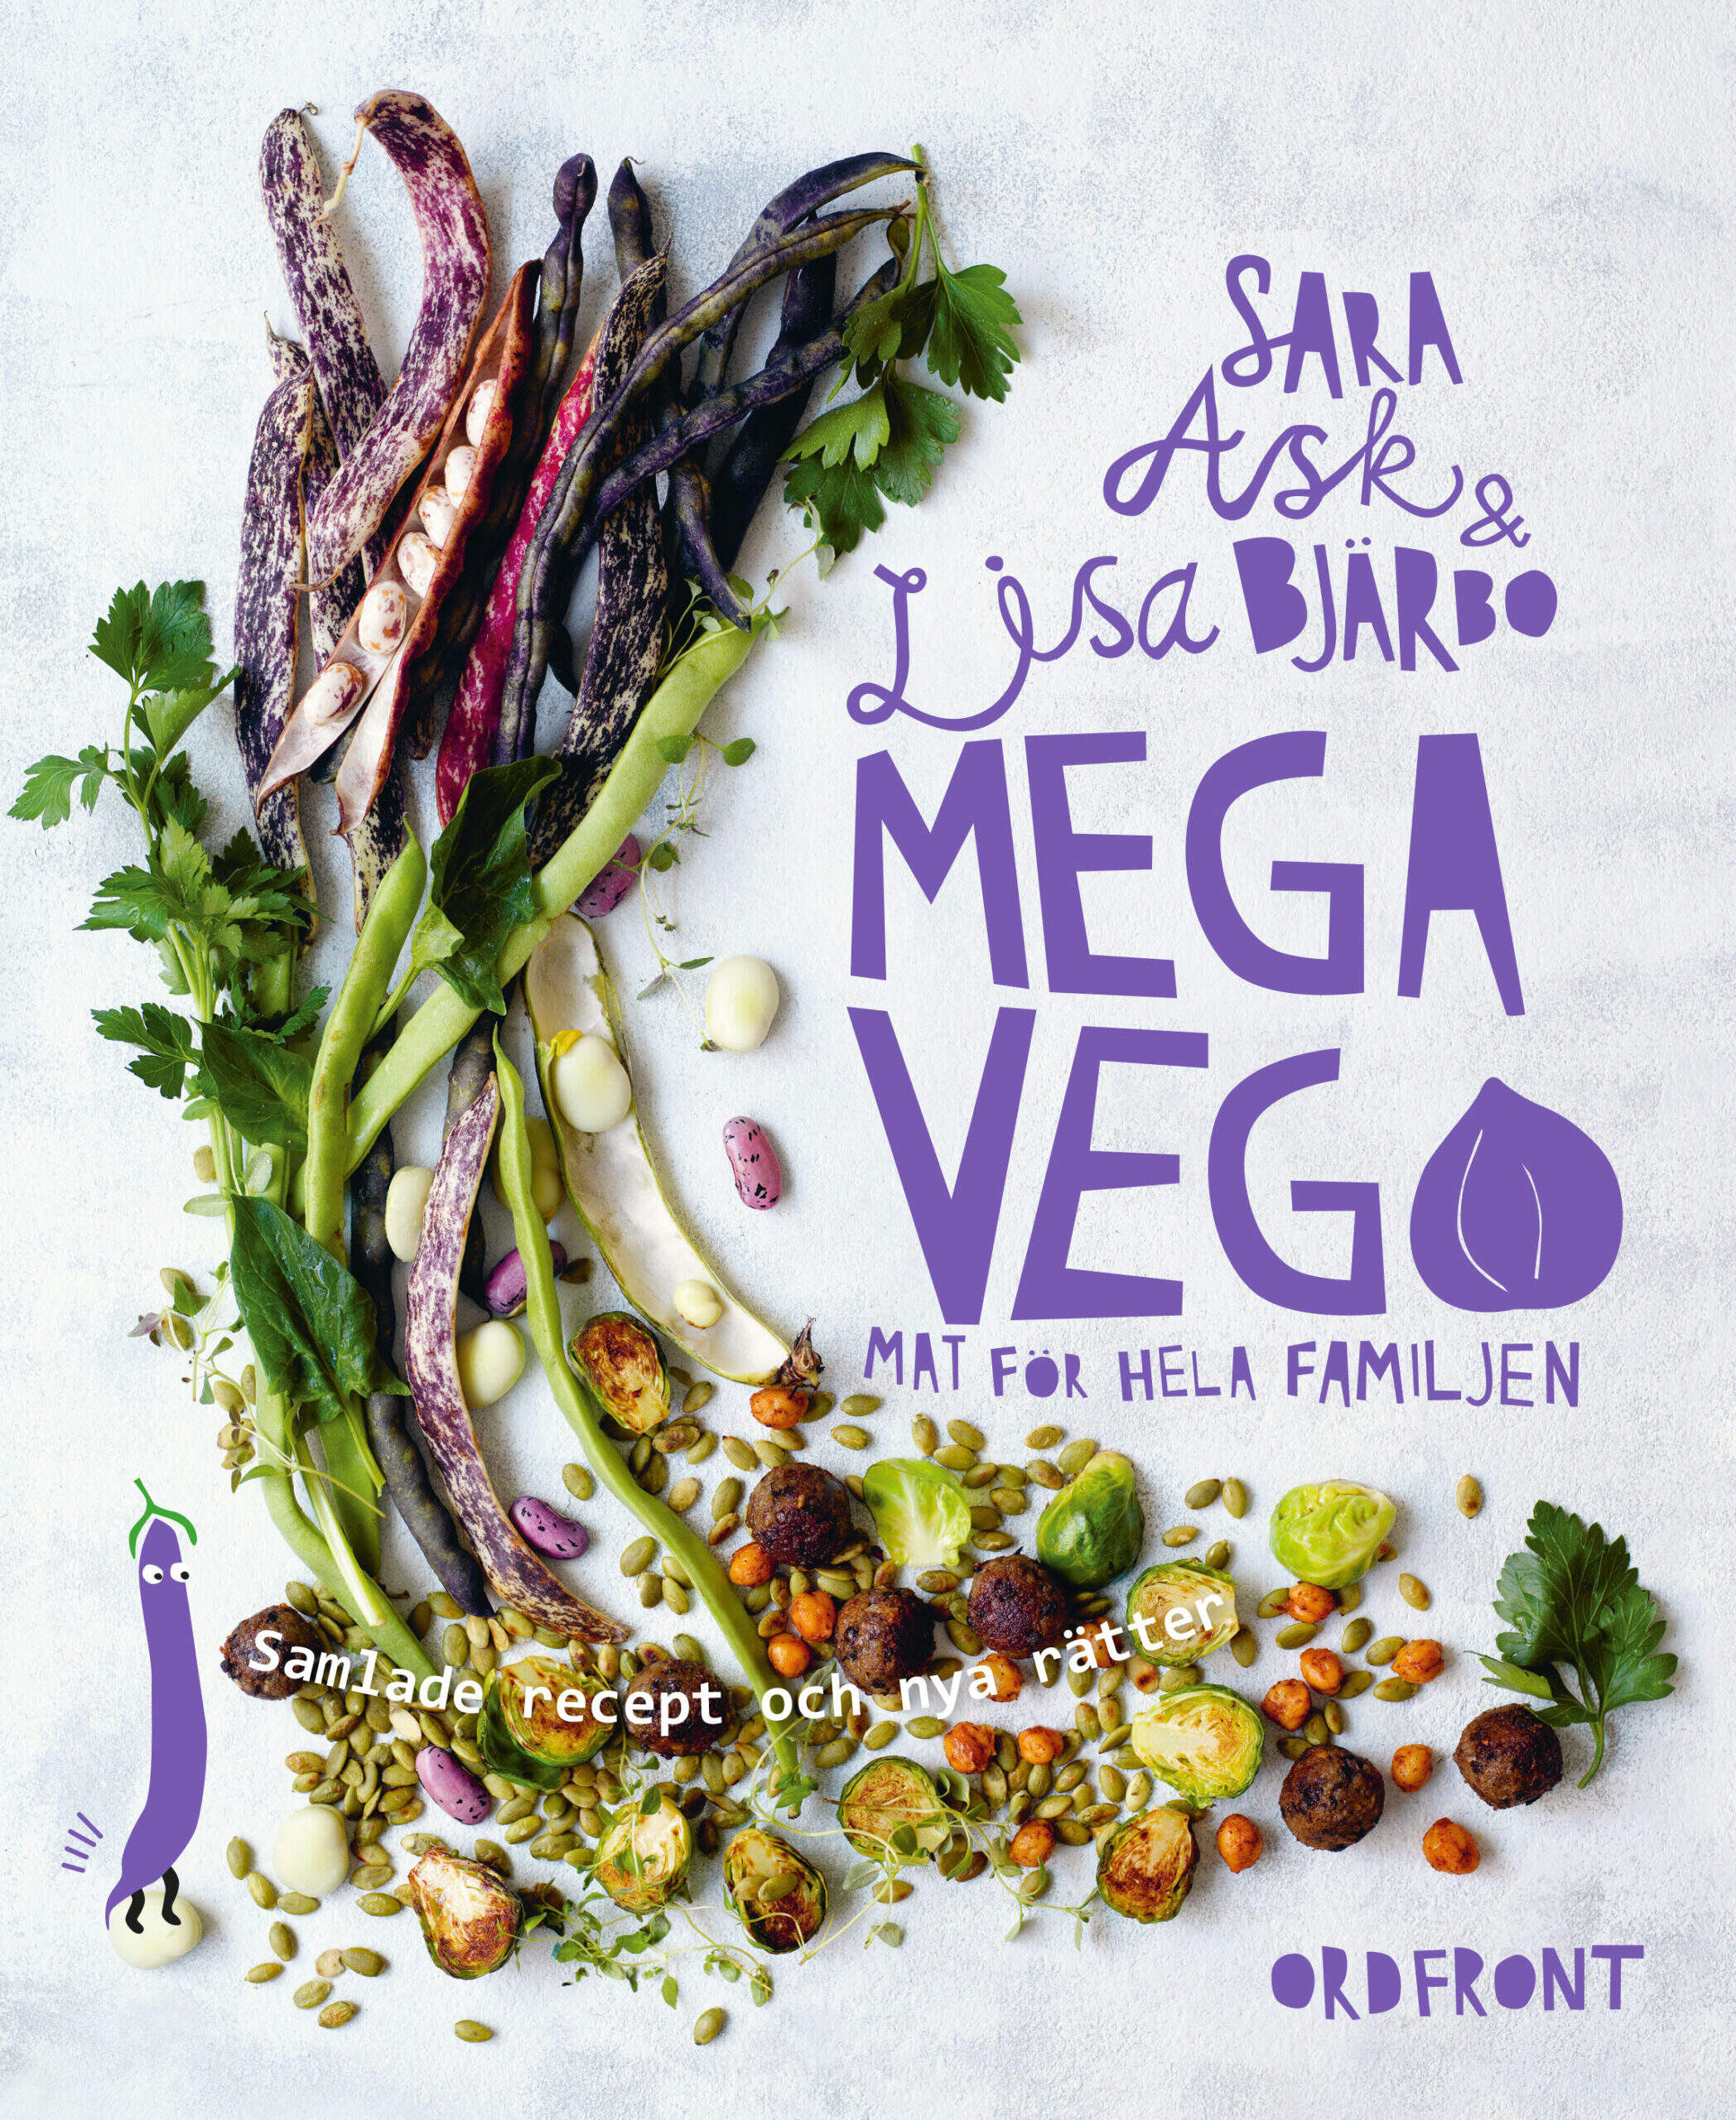 Bokomslag av kokboken Megavego av Sara Ask och Lisa Bjärbo